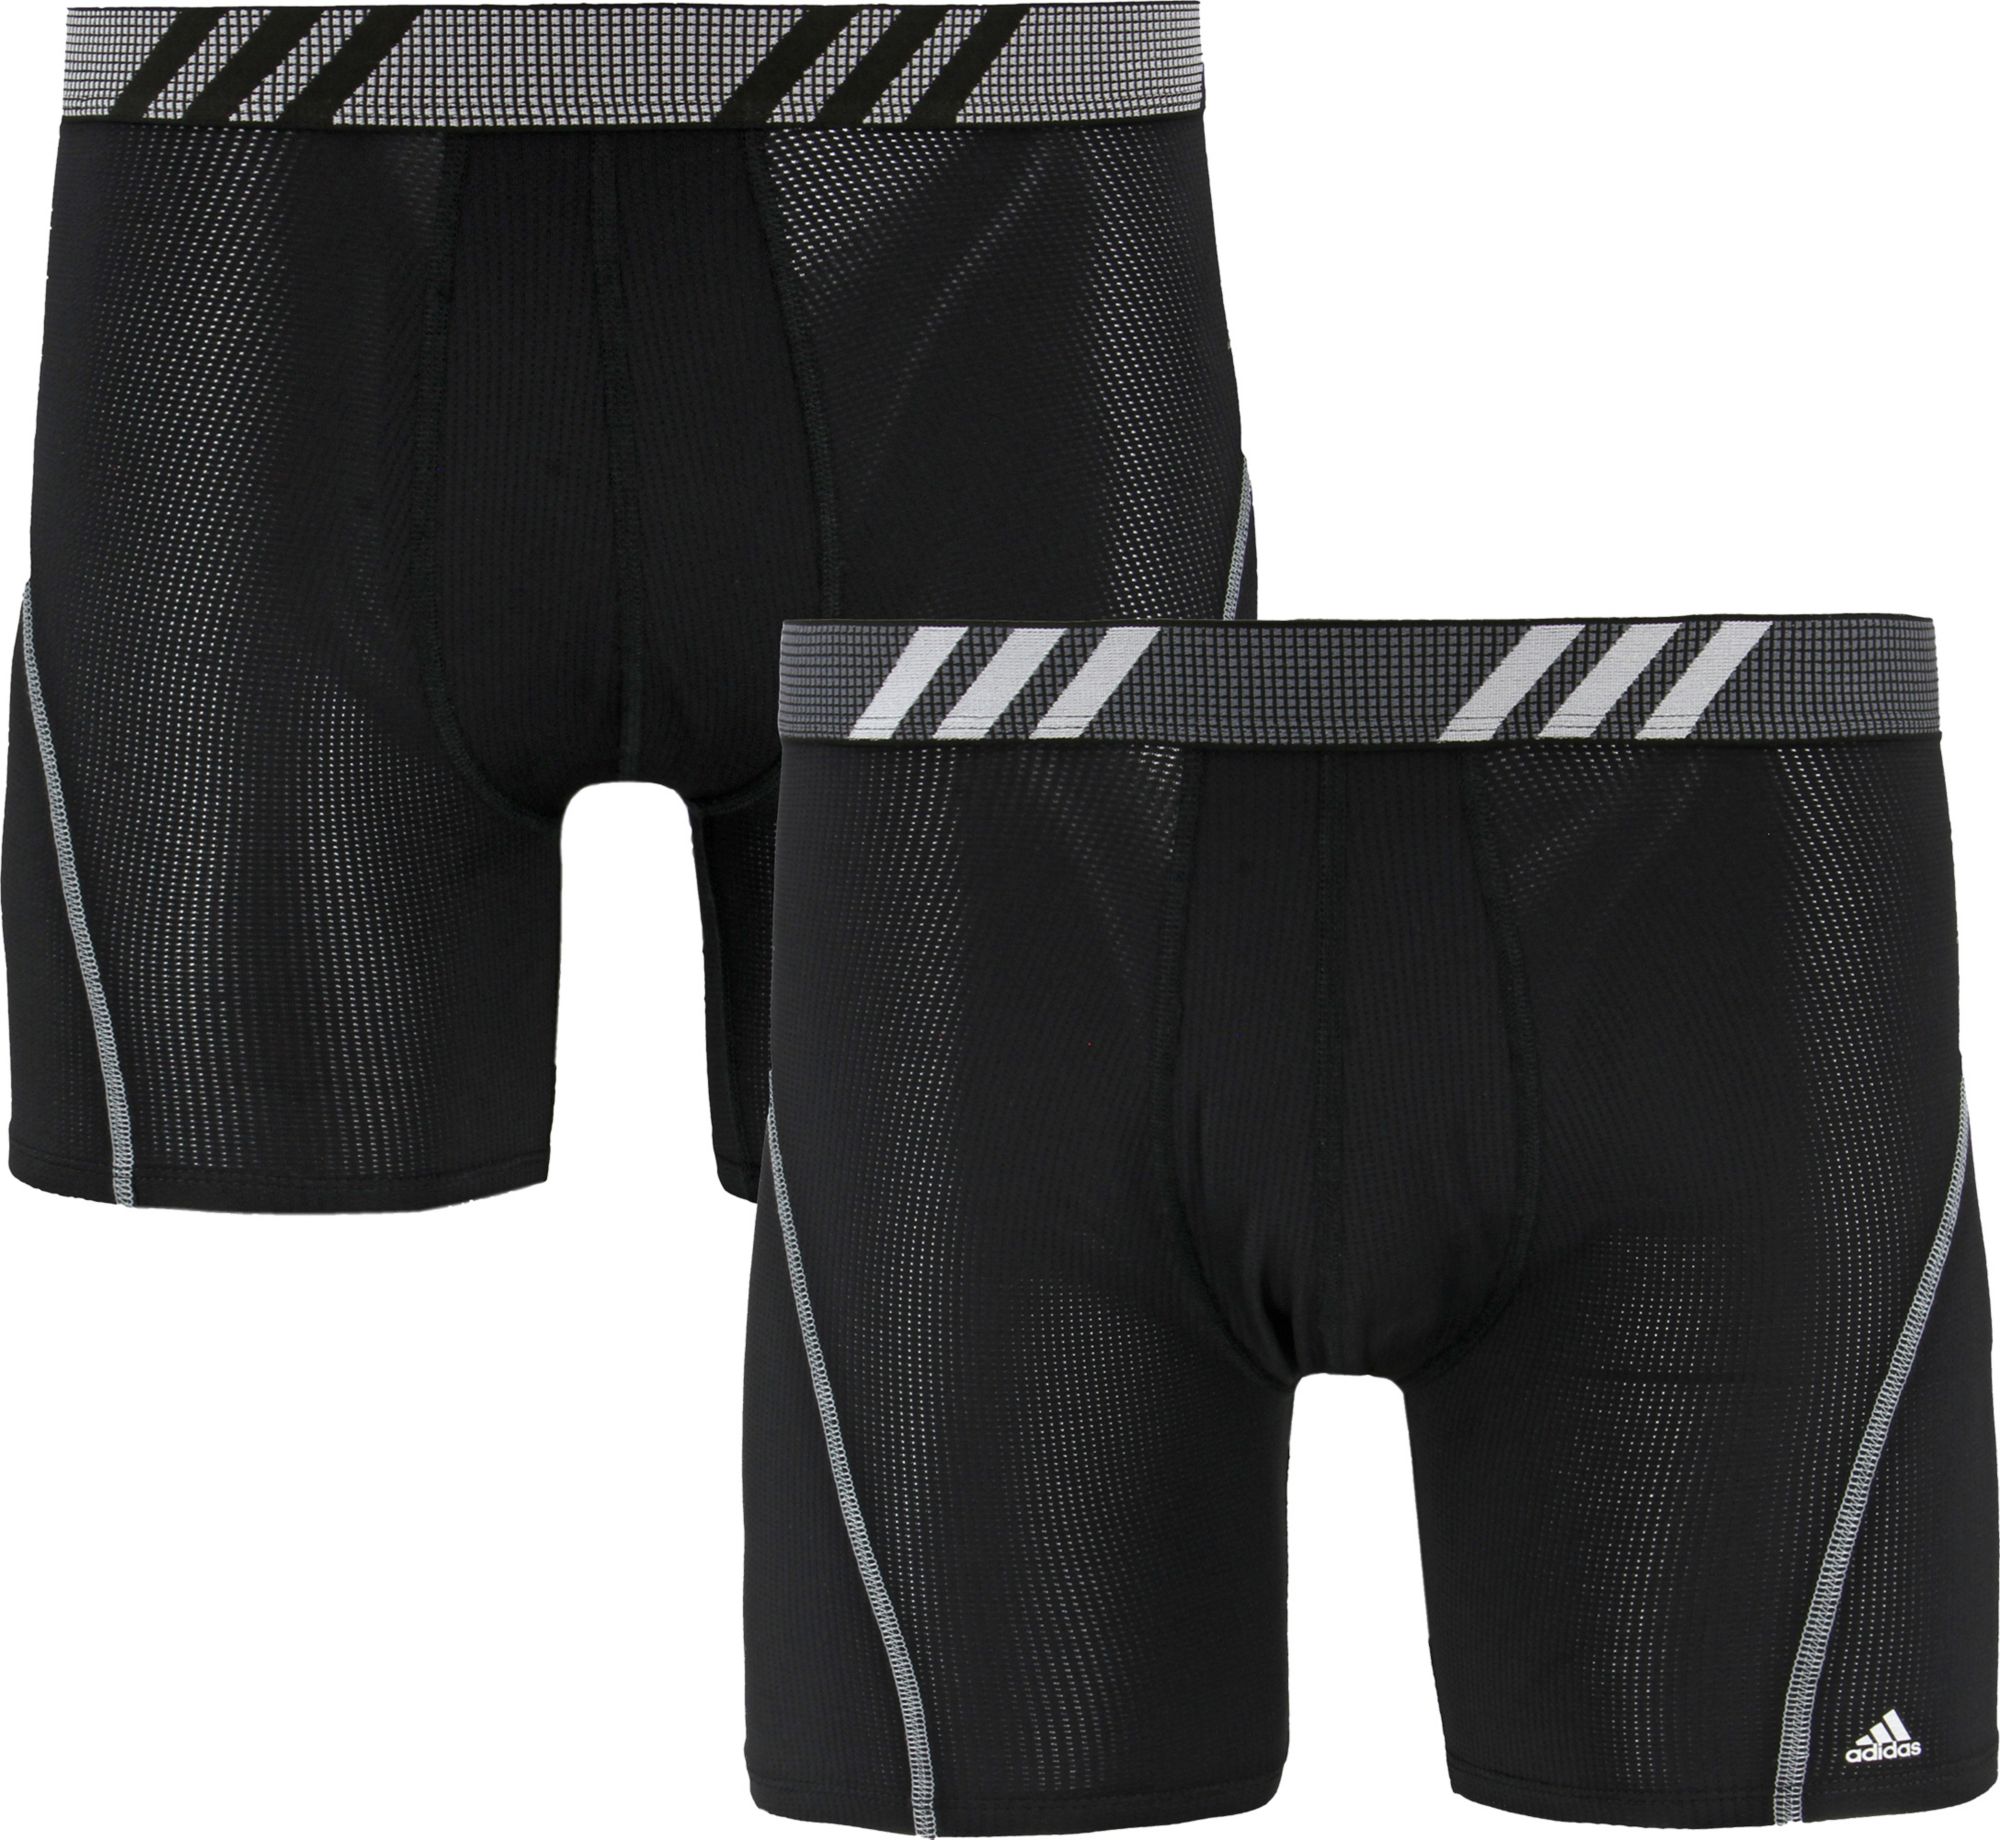 adidas sport performance underwear